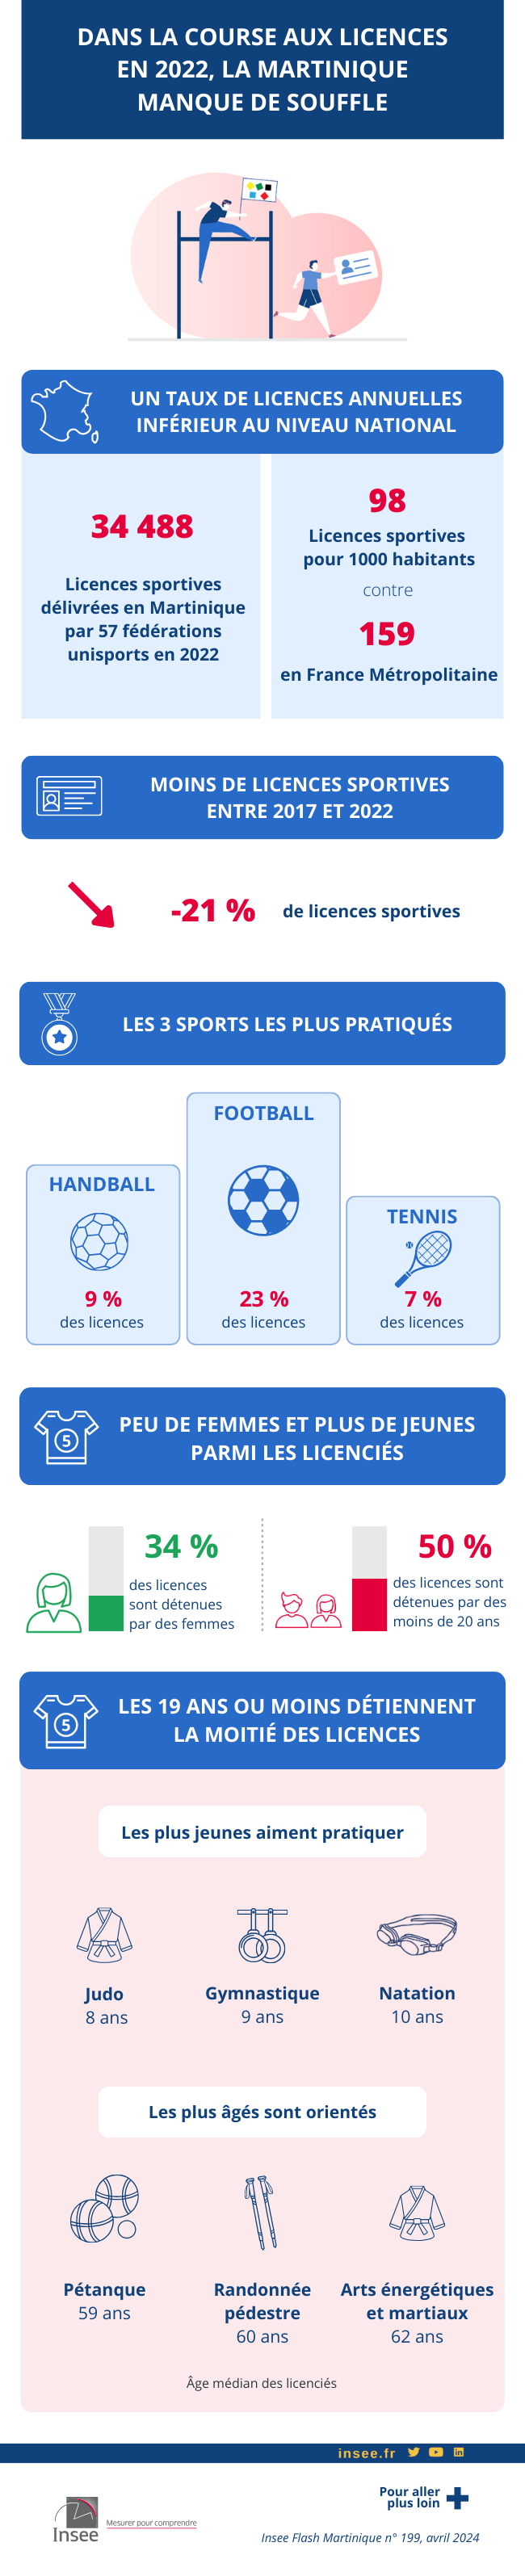 Infographie sur le sport en Martinique en 2022